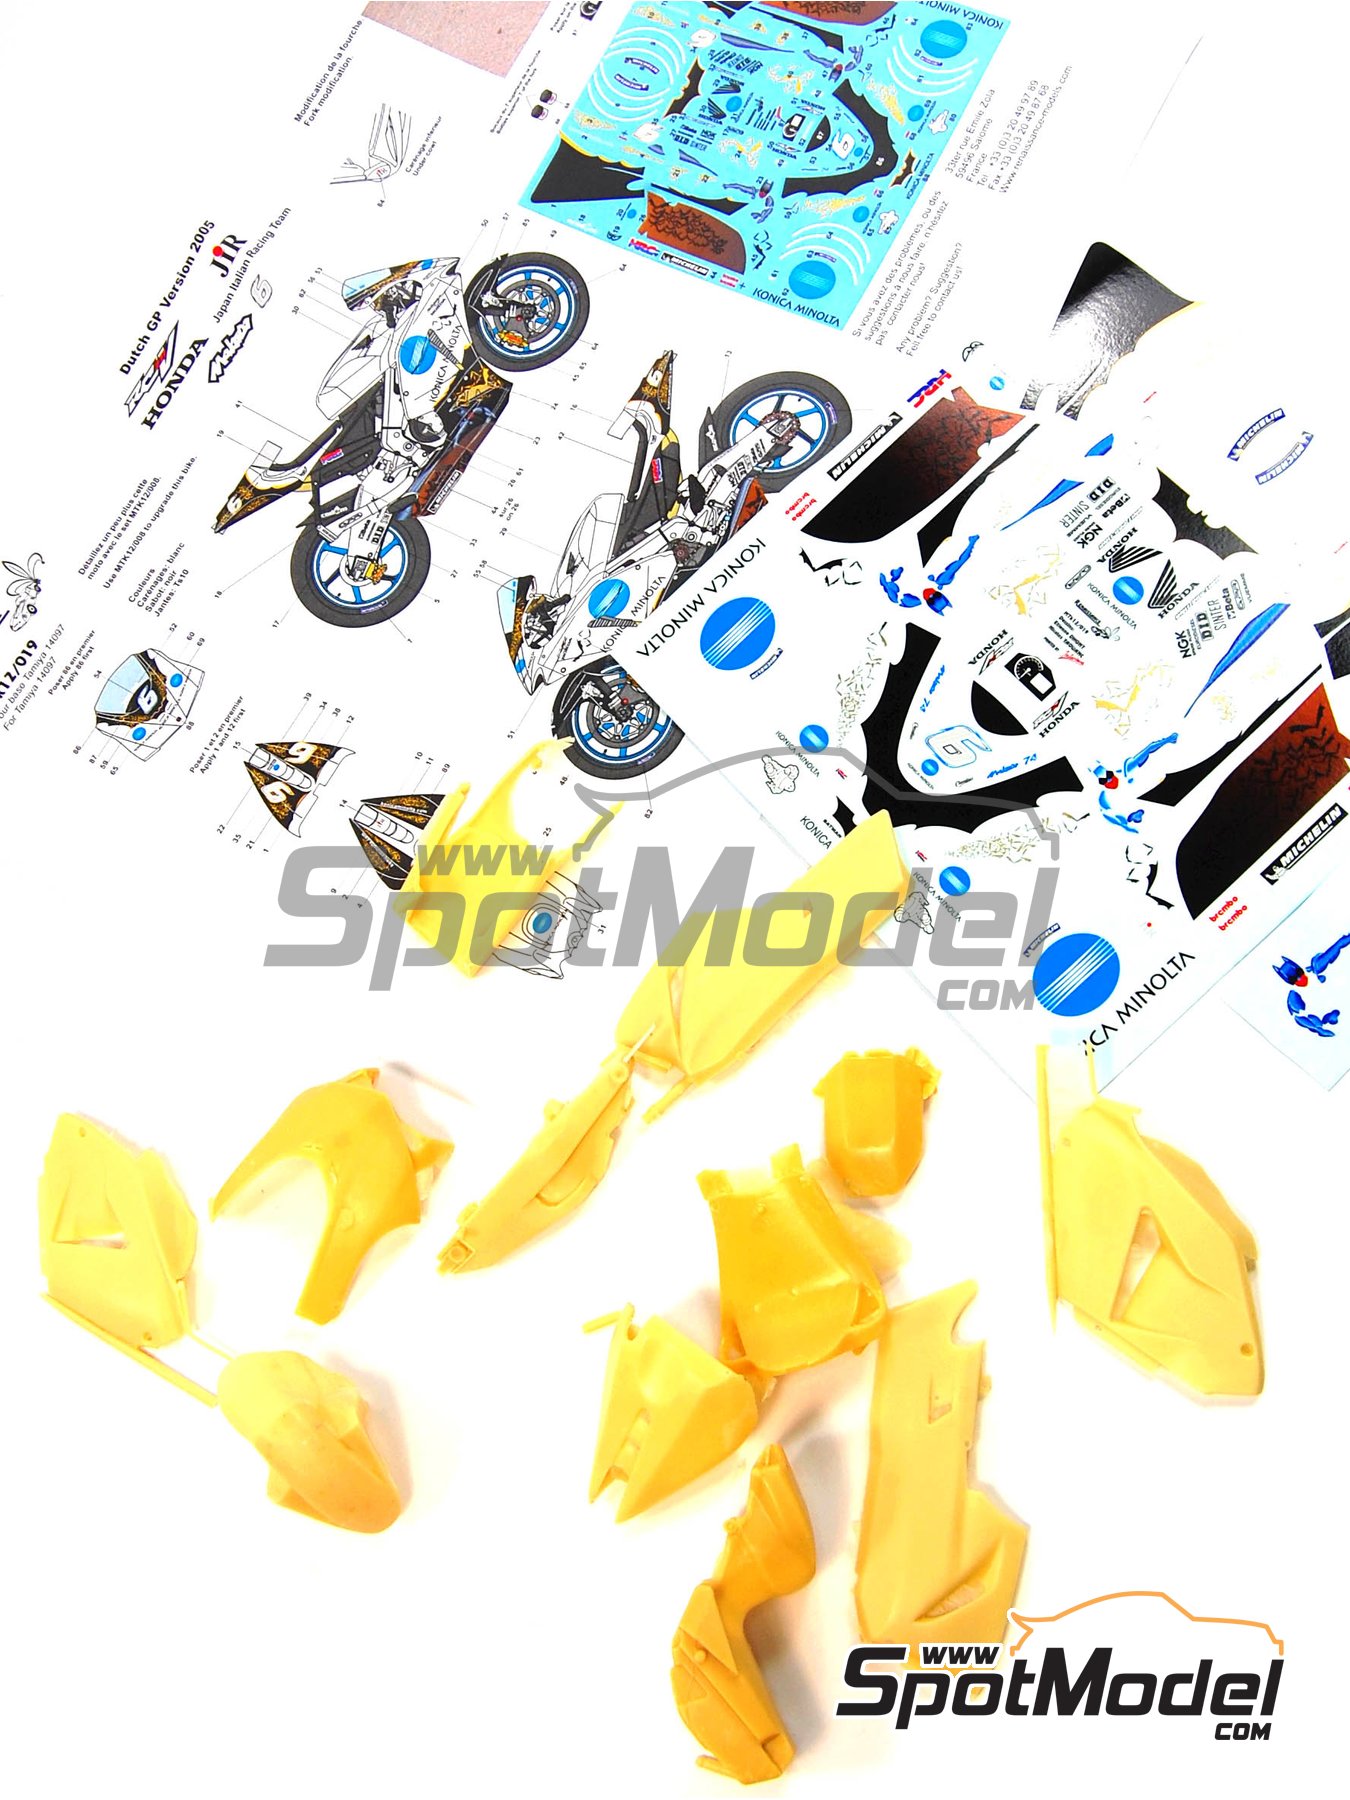 SpotModel SPOT-019: Herramienta de modelismo - Pinzas rectas (ref